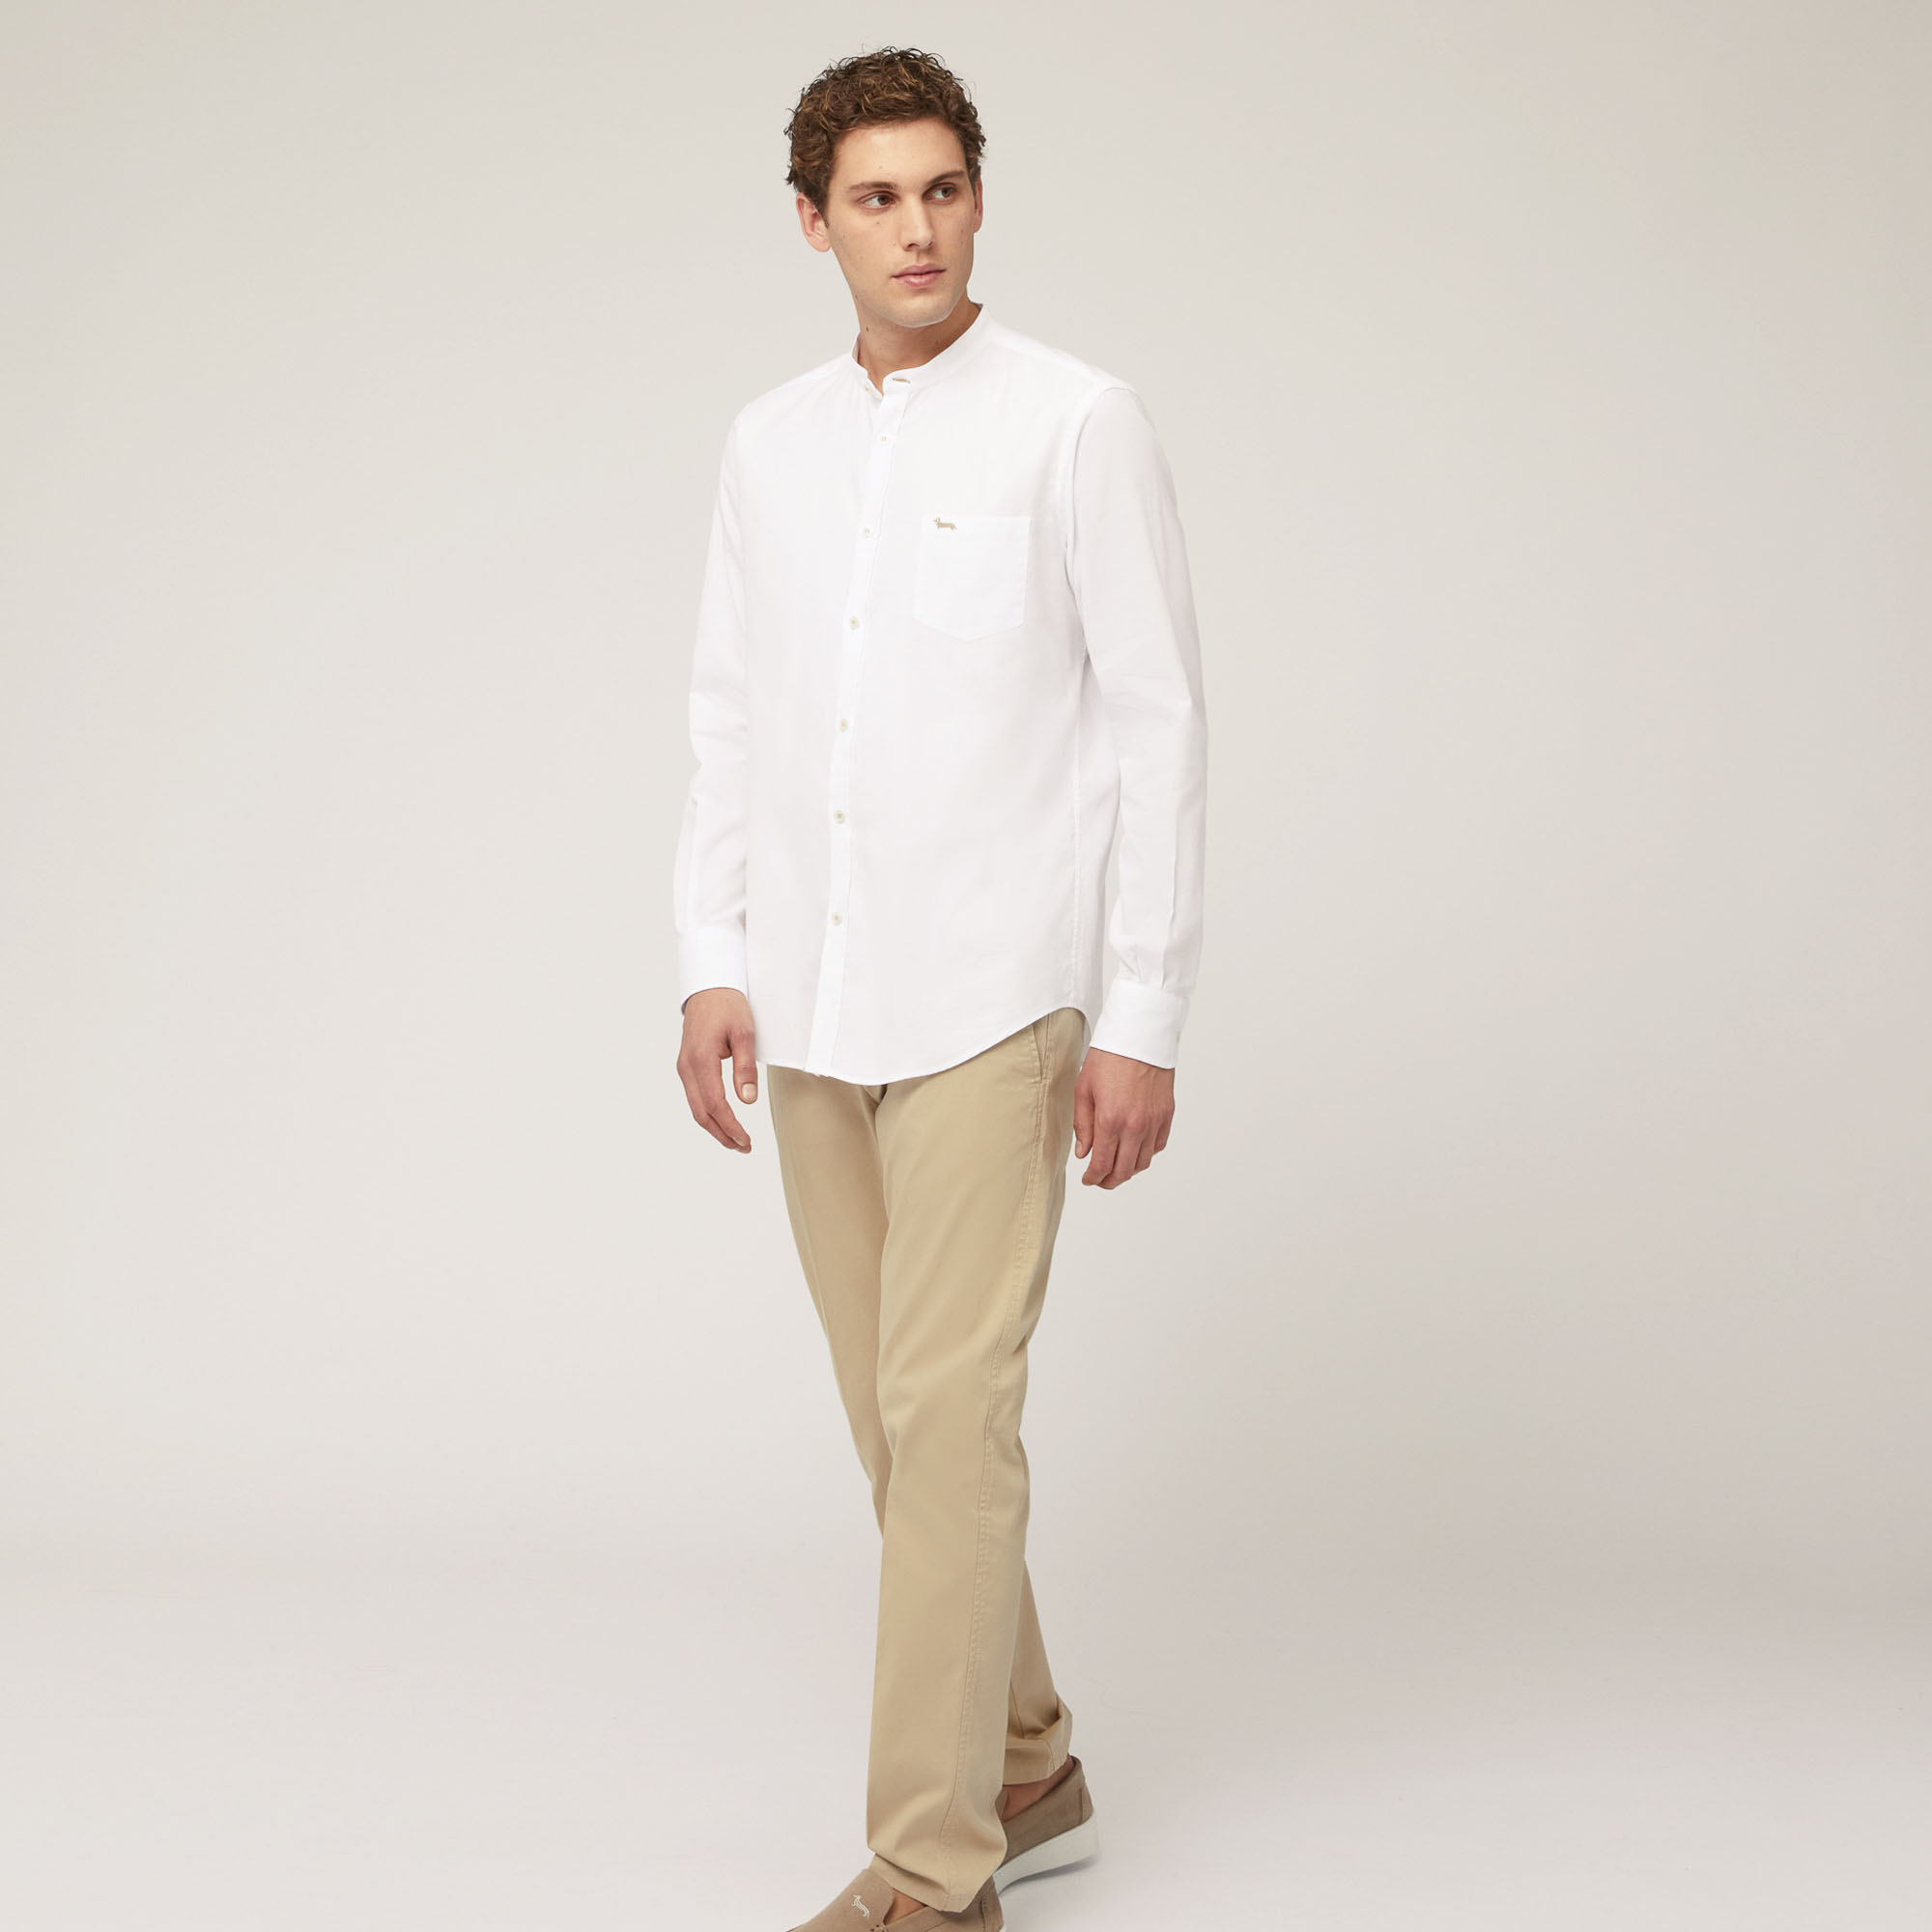 Camicia In Cotone Armaturato Con Collo Alla Coreana E Taschino, Bianco, large image number 3